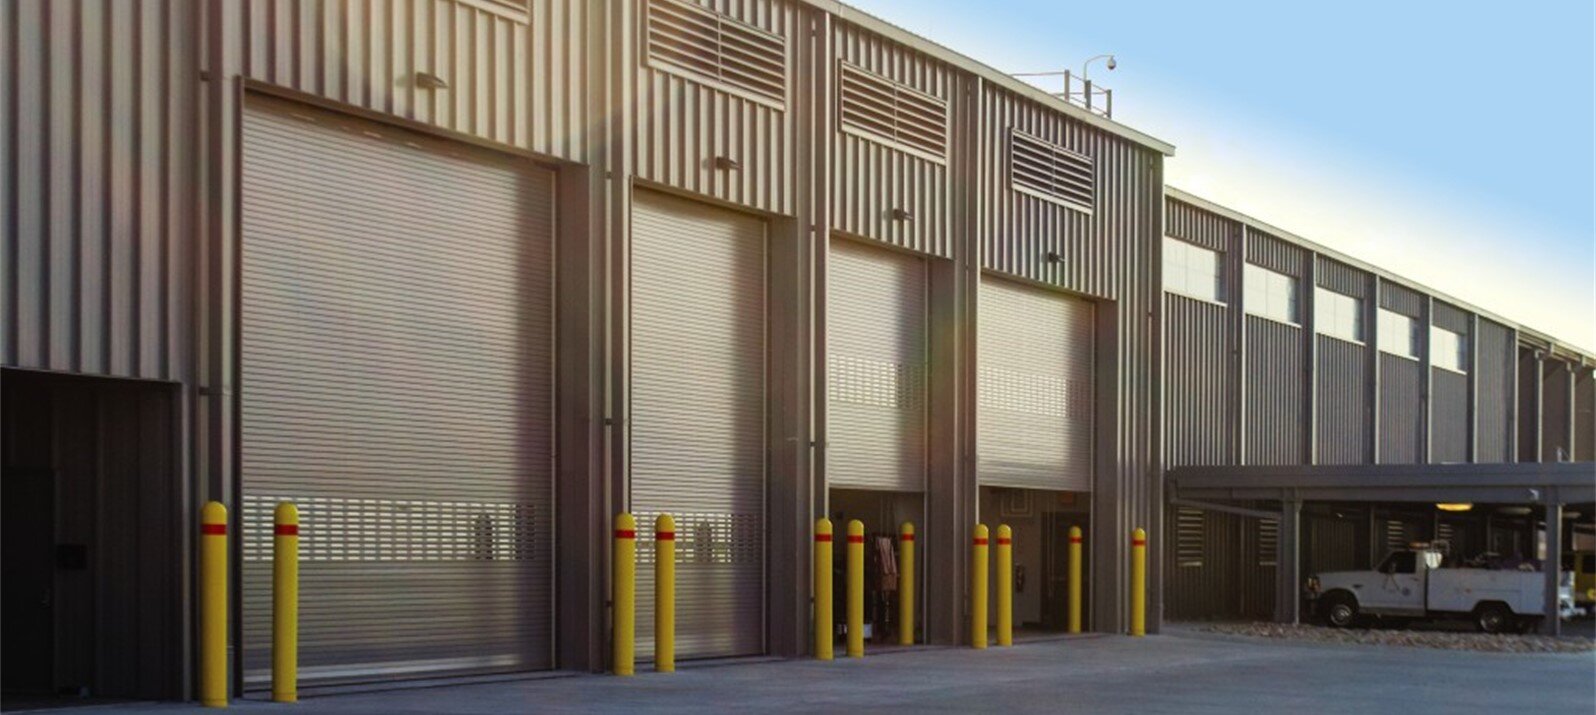 Commercial Garage Doors, Overhead Door Company of Kearney™